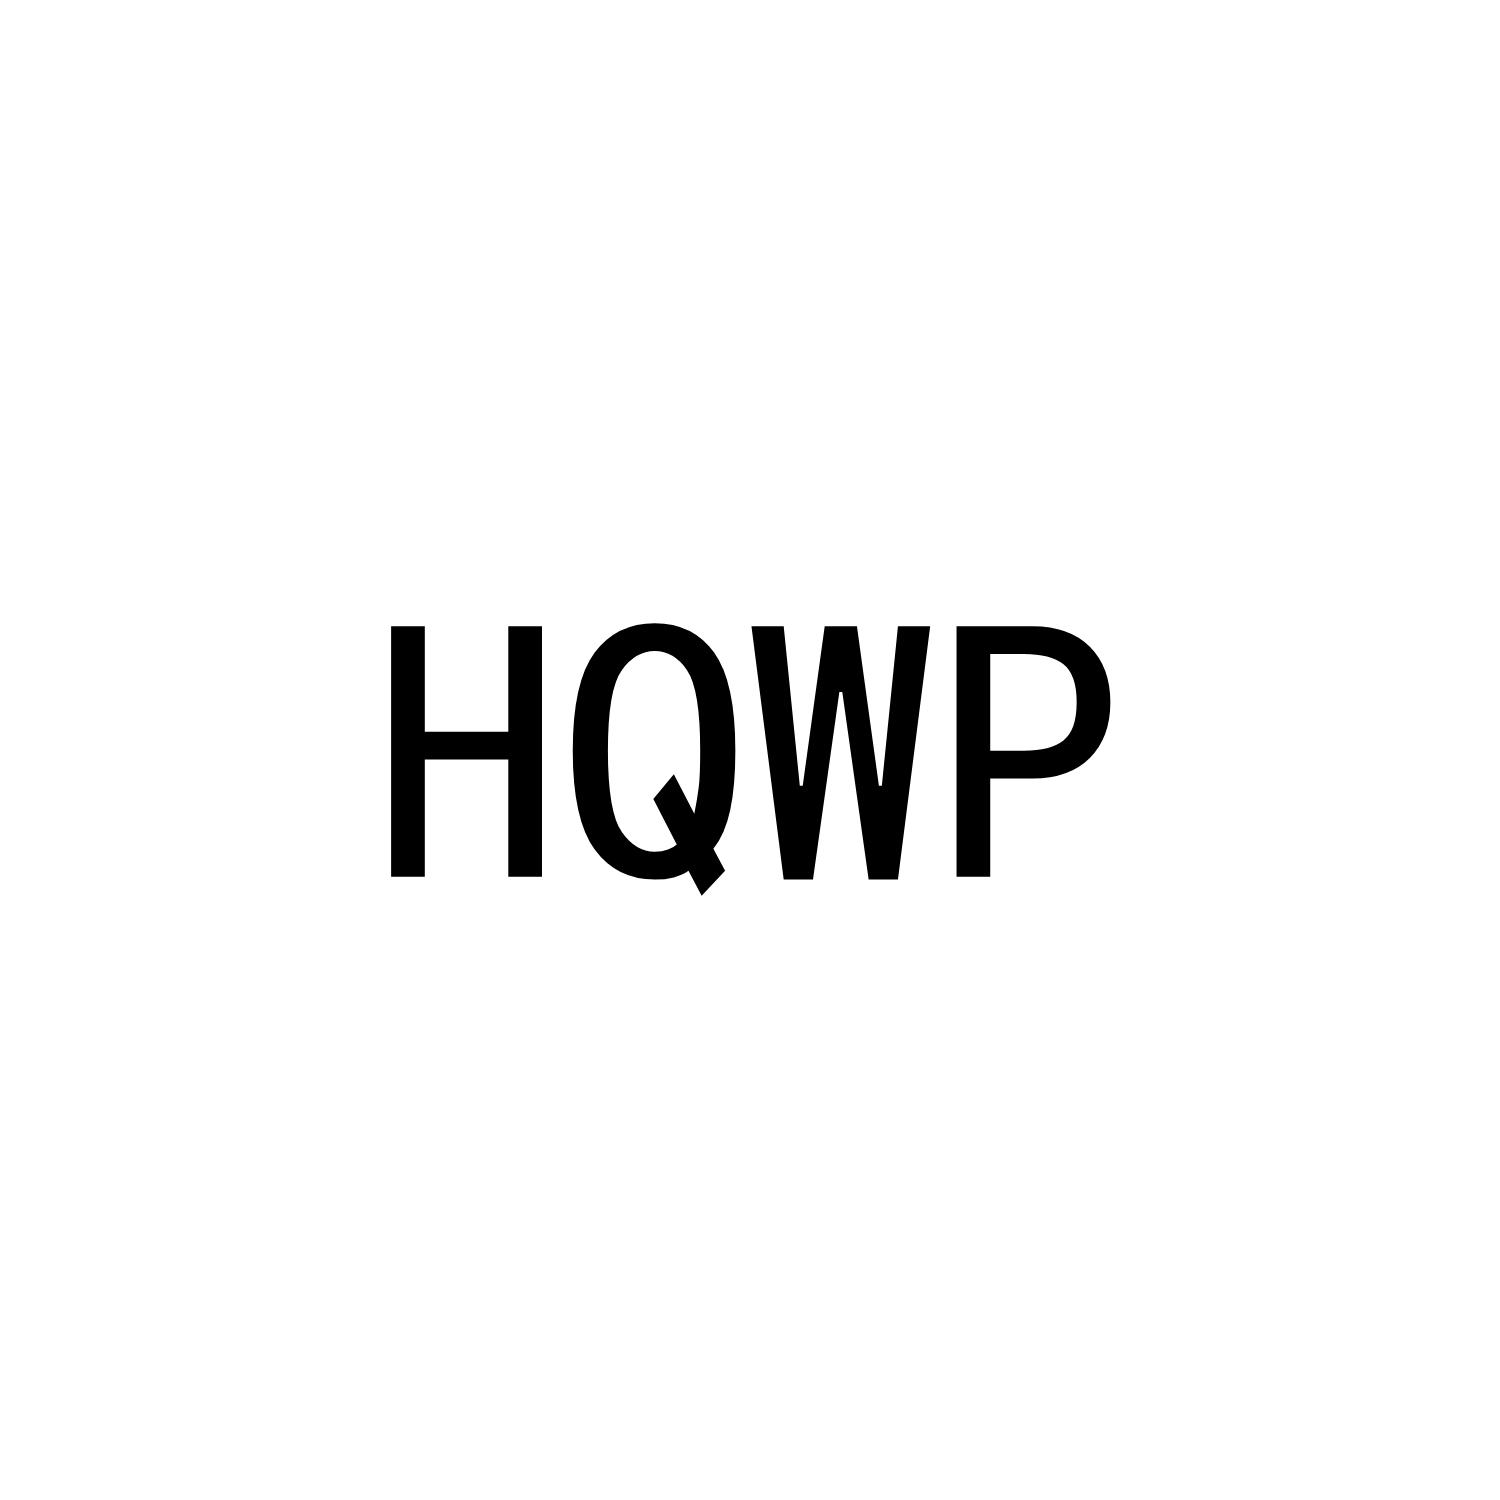 HQWP